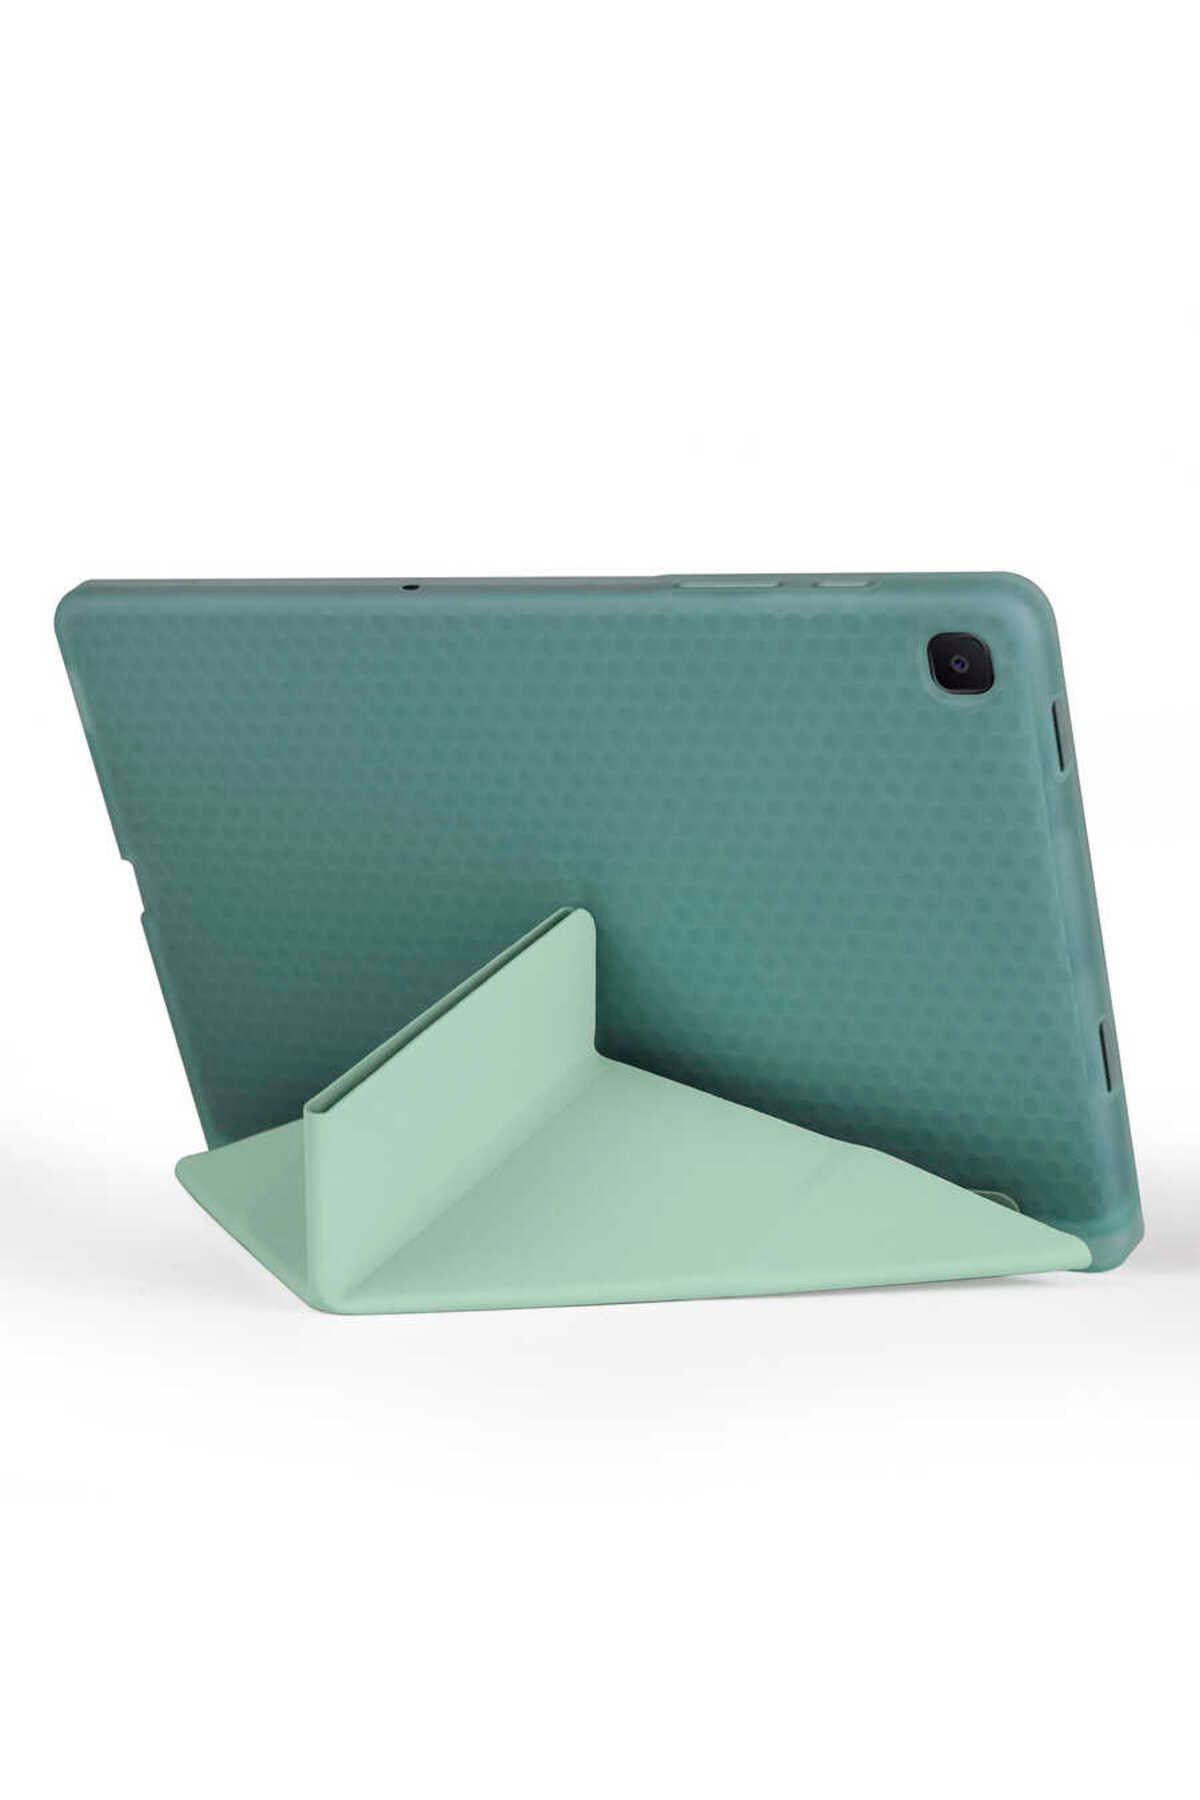 Gpack Galaxy Tab A7 10.4 T507 2020 Uyumlu  Kılıf Standlı Katlanabilir Pu Silikon tf1 Koyu Yeşil